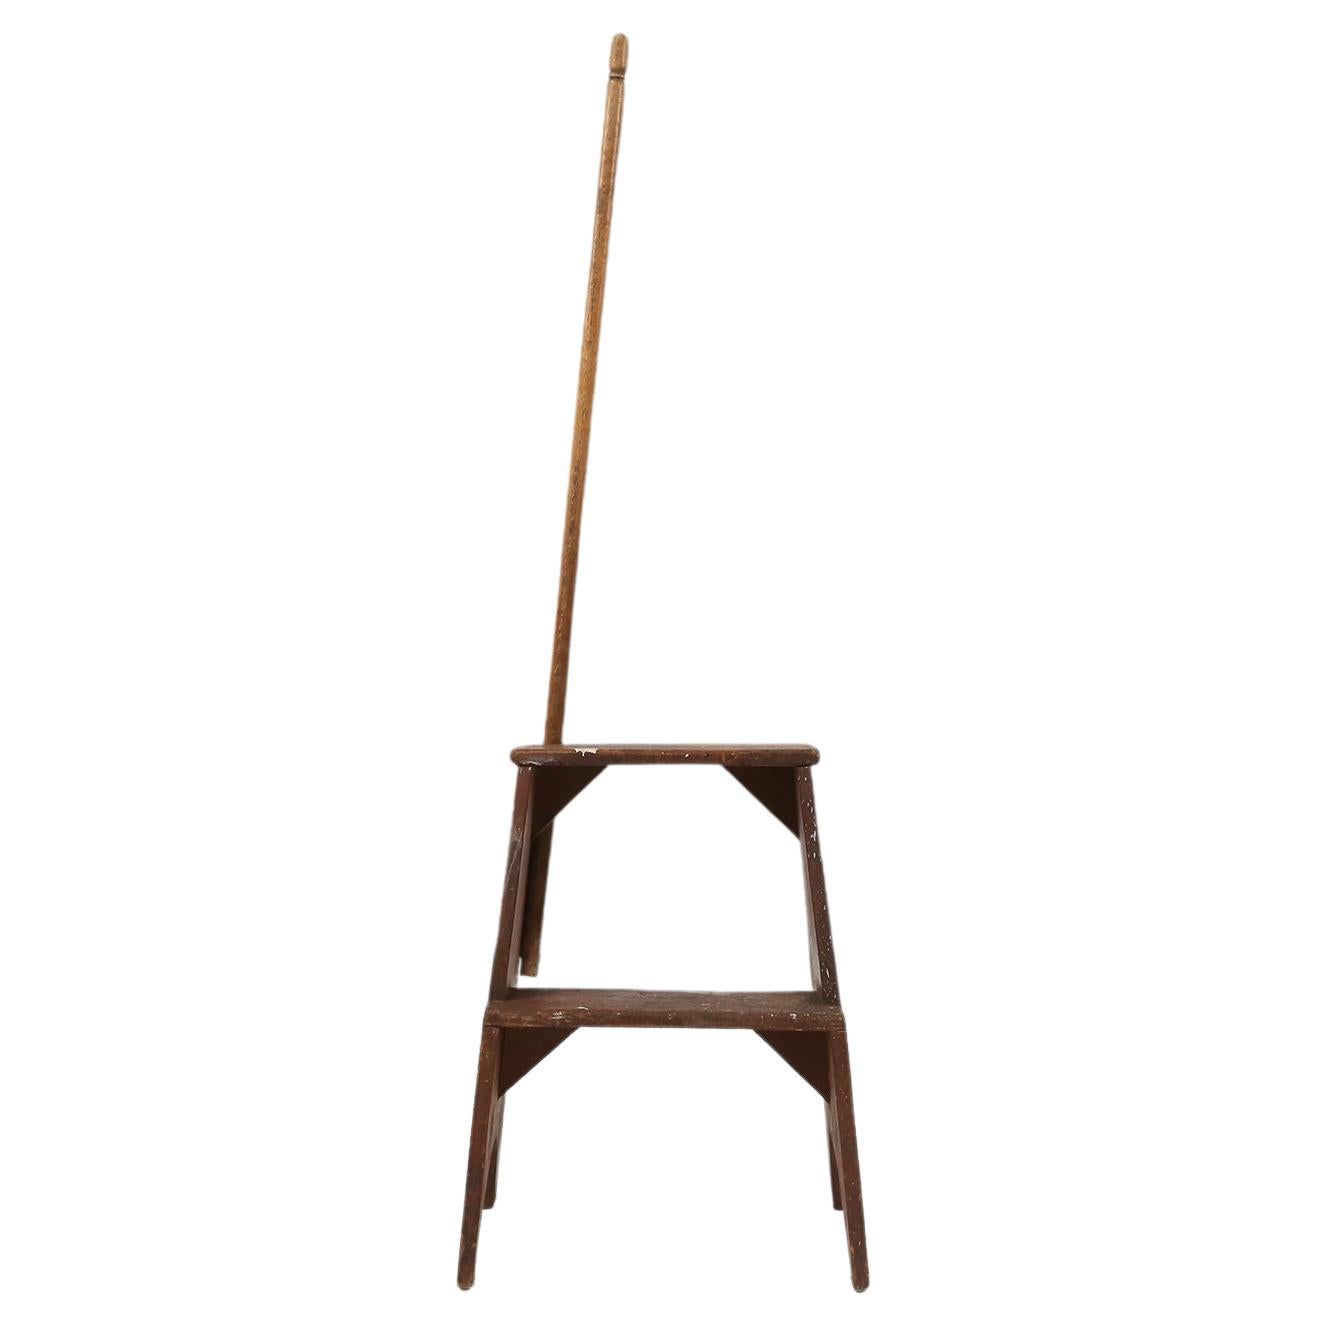 Diese schöne industrielle Vintage-Stufenleiter aus Holz mit einem Stock als Stütze ist eine perfekte Ergänzung für jede Einrichtung. Mit seinem französischen Design und der Holzkonstruktion strahlt er einen klassischen Charme aus, der sich mühelos